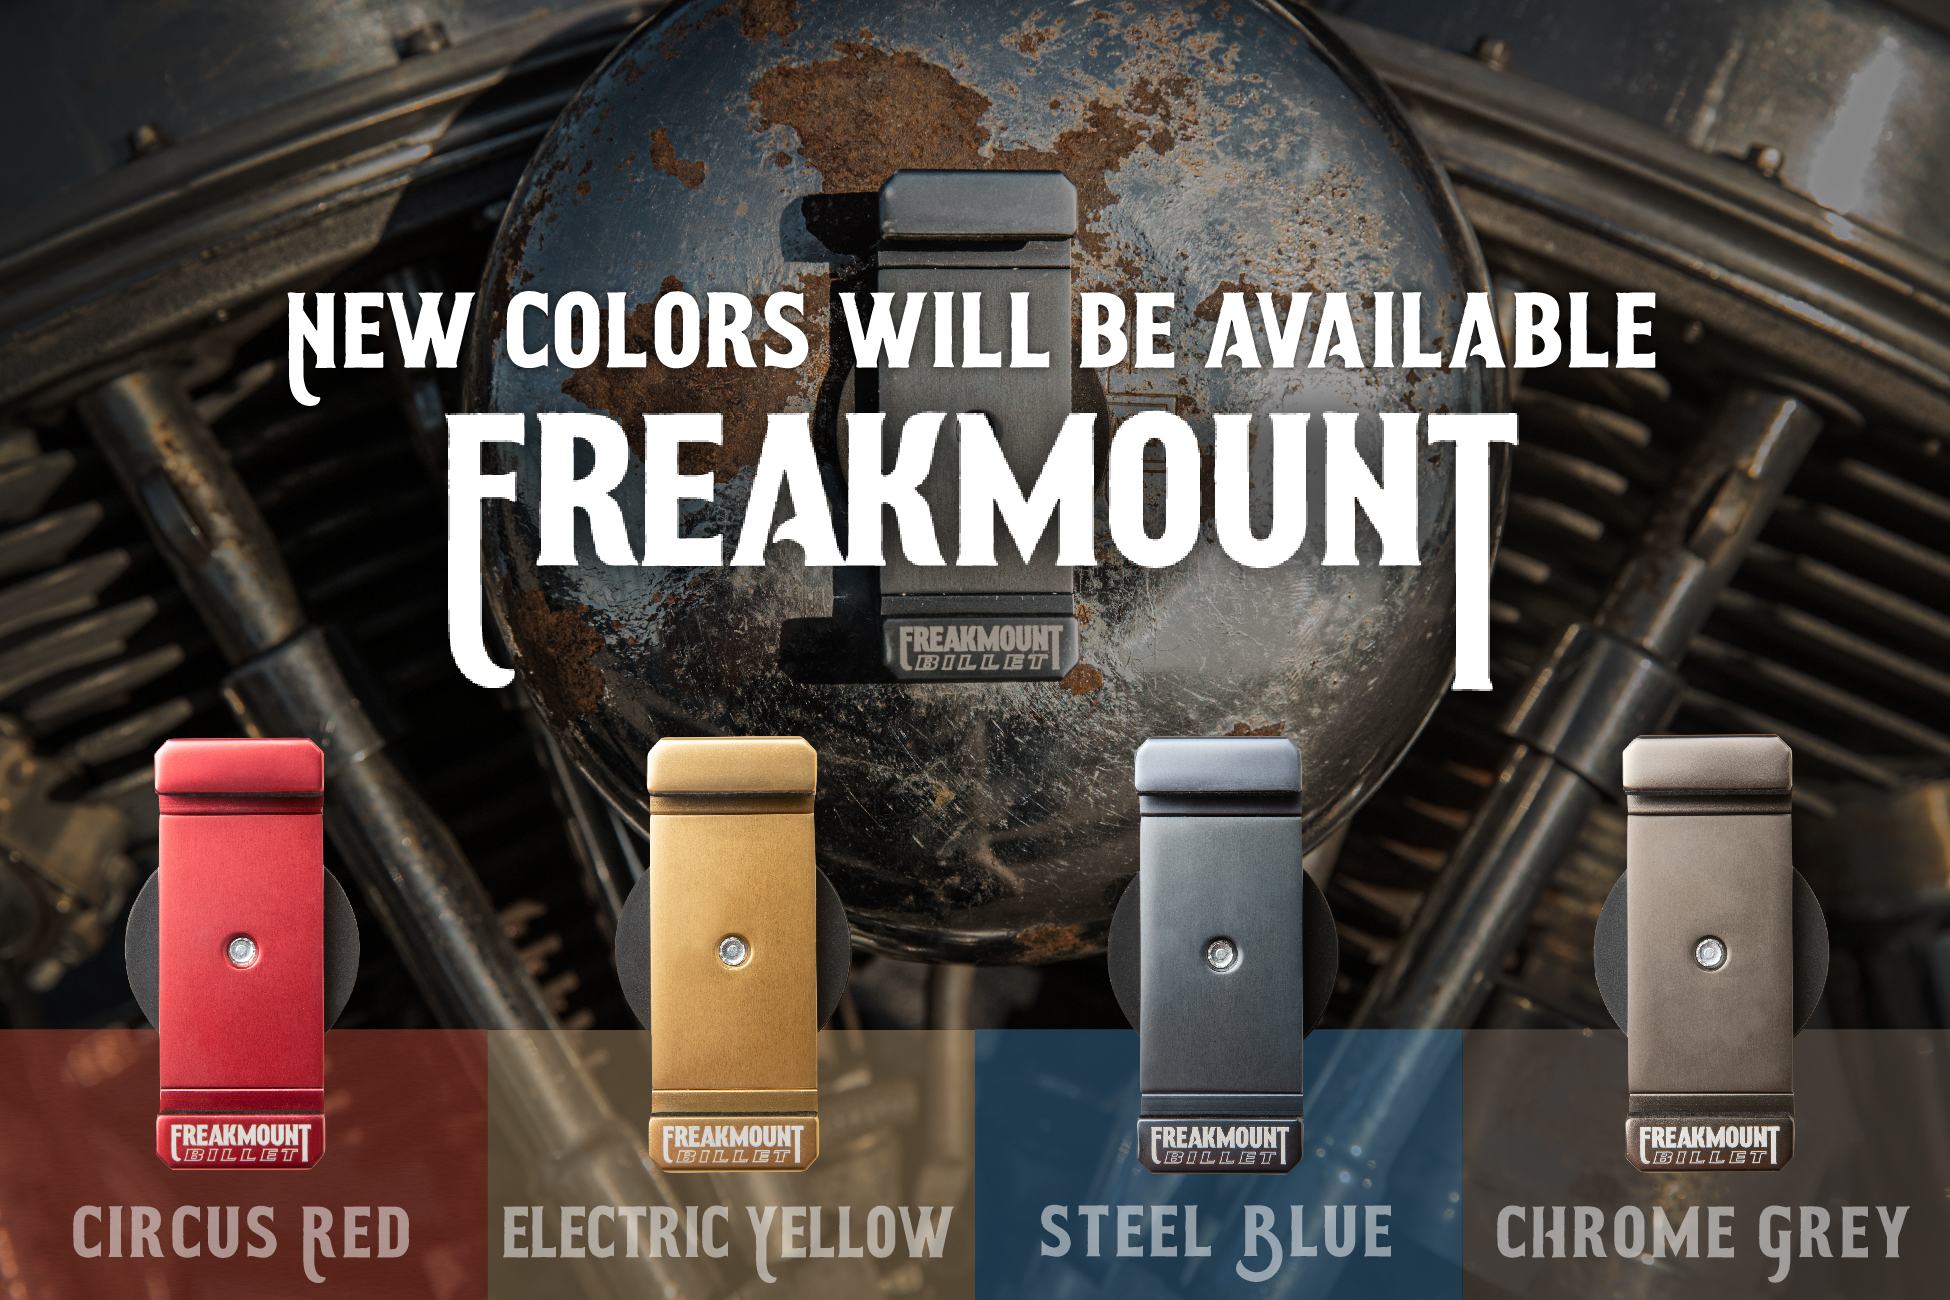 バイク用スマホホルダー「FREAKMOUNT」の新色が発売。4週にわたって4つのカラーが登場